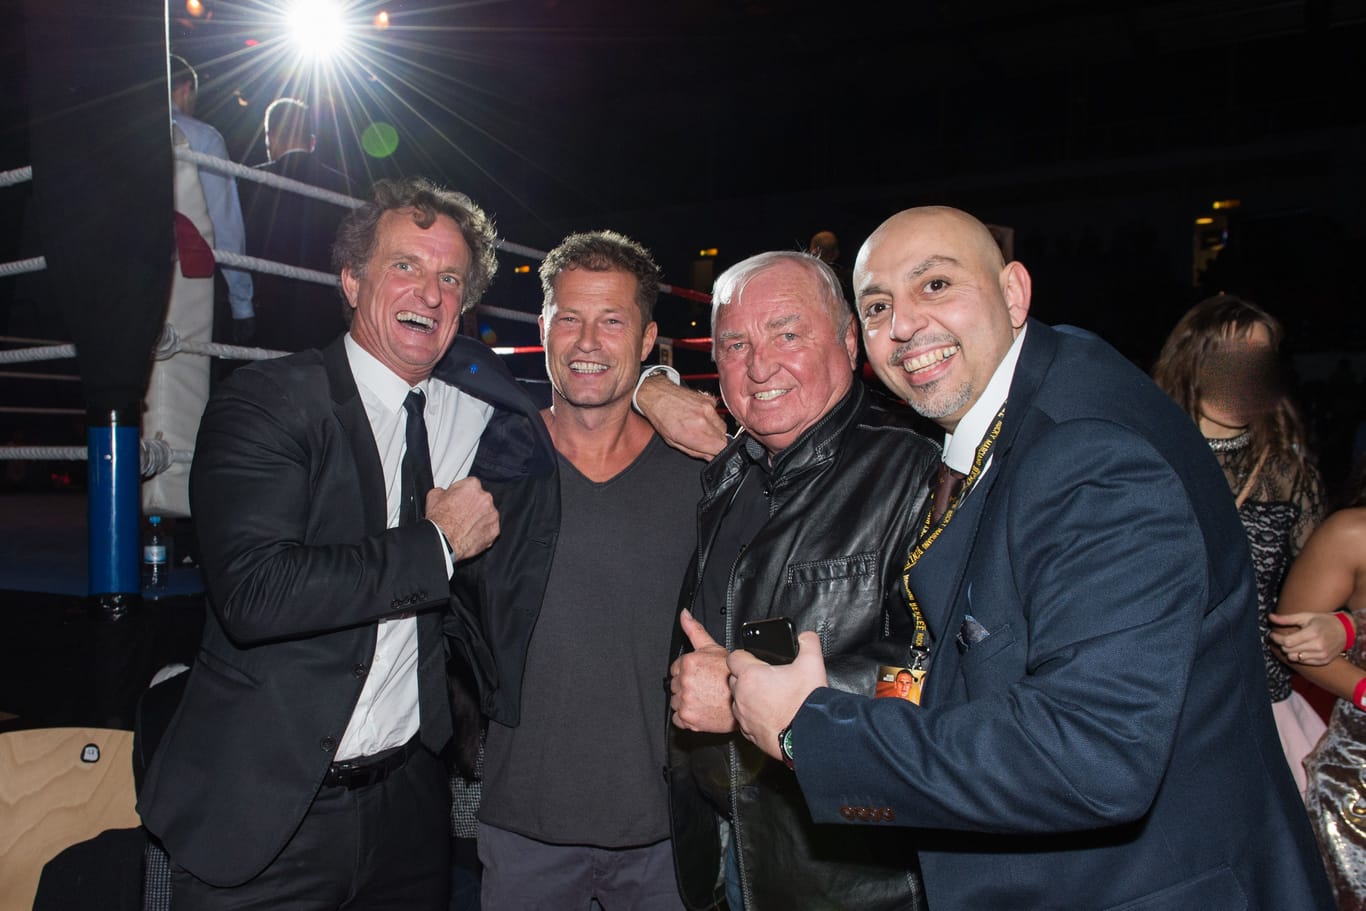 Thomas Puetz, Till Schweiger, Ulli Wegner, Ramin Seyed bei der Boxveranstaltung "Night of the Champions".